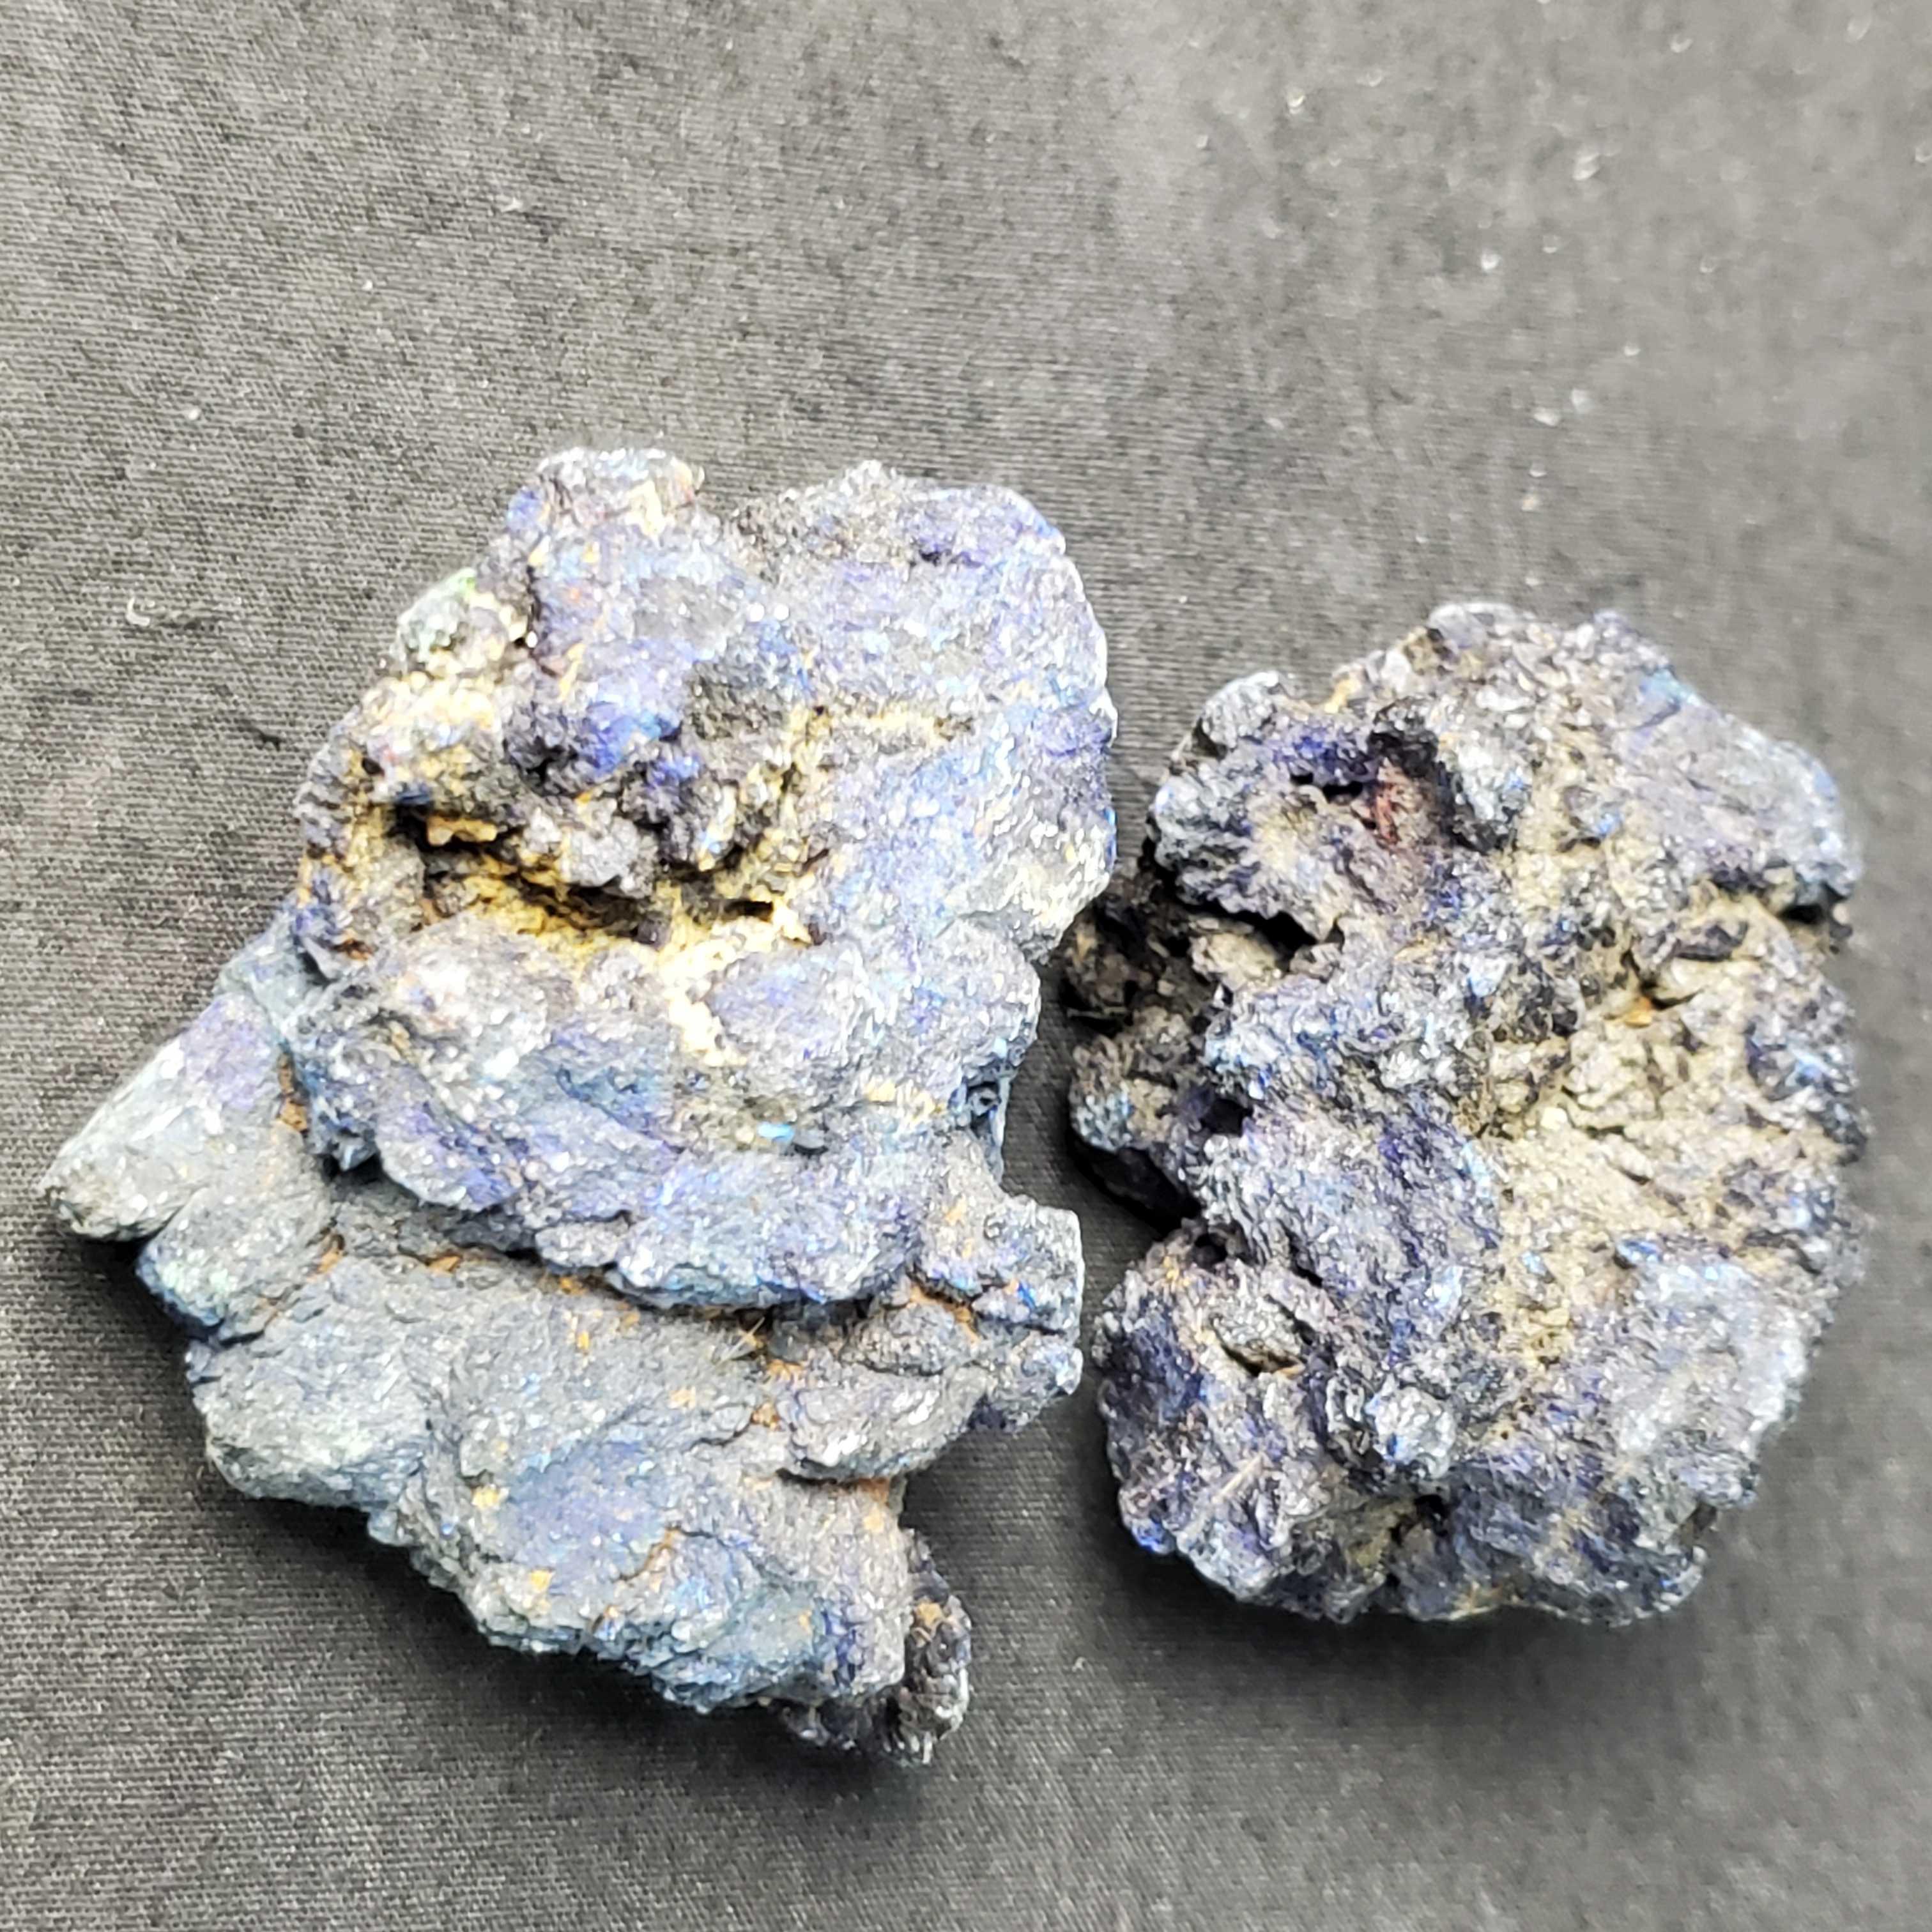 Small sterilite container of rock/mineral specimens Variscite Cuprite Barite more